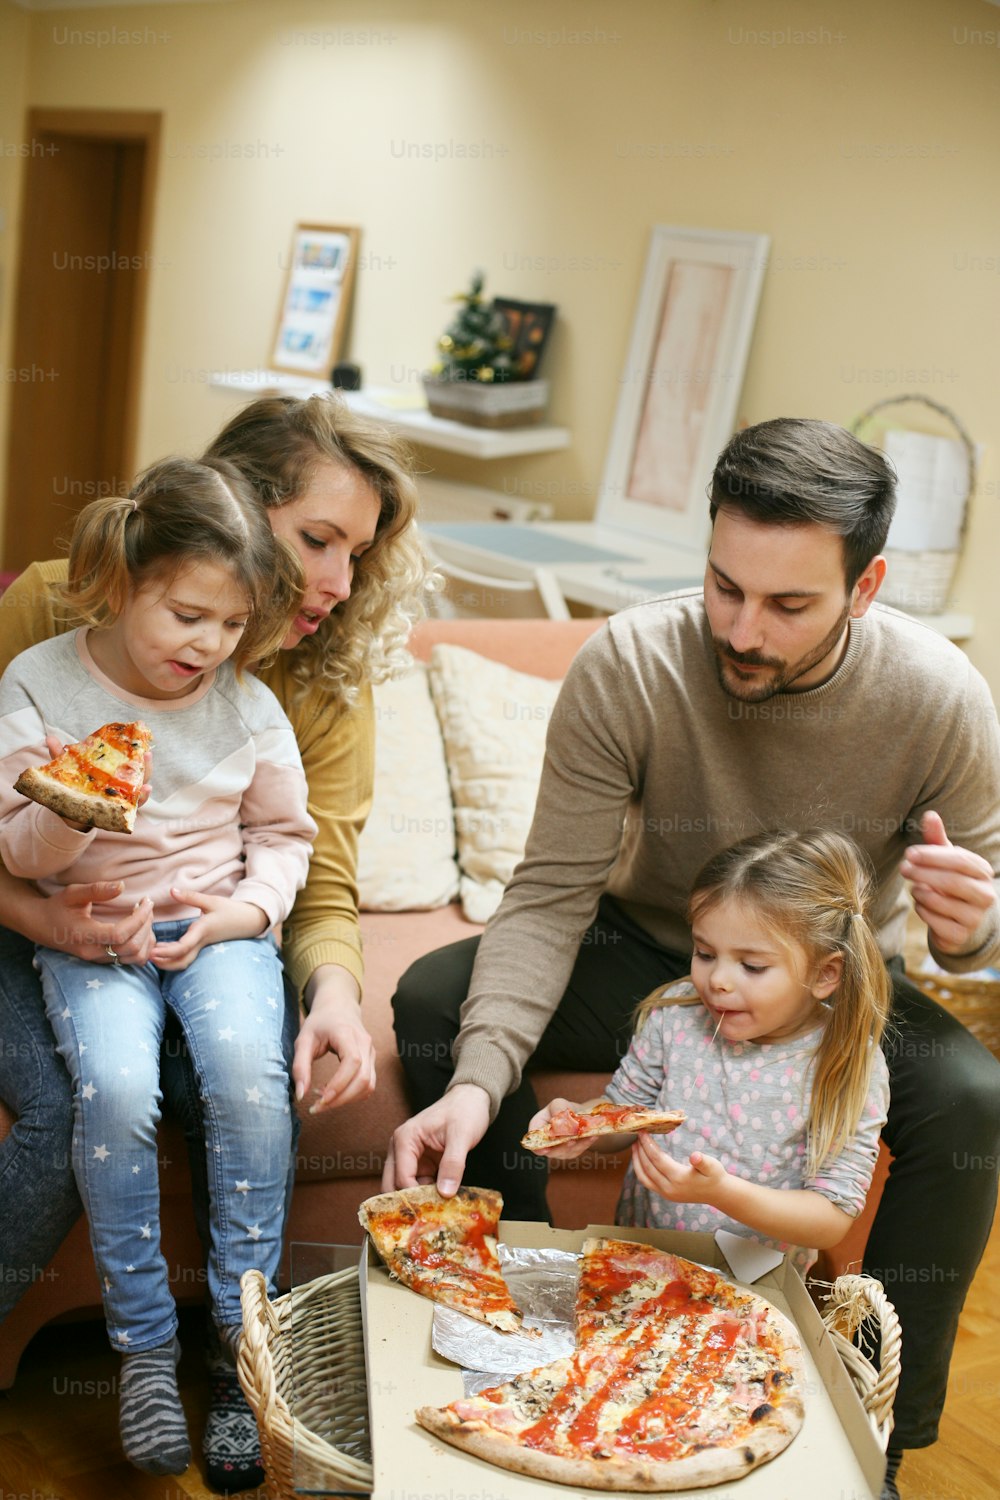 Parents et enfants mangent de la pizza ensemble. Famille heureuse profitant d’un repas ensemble à la maison.